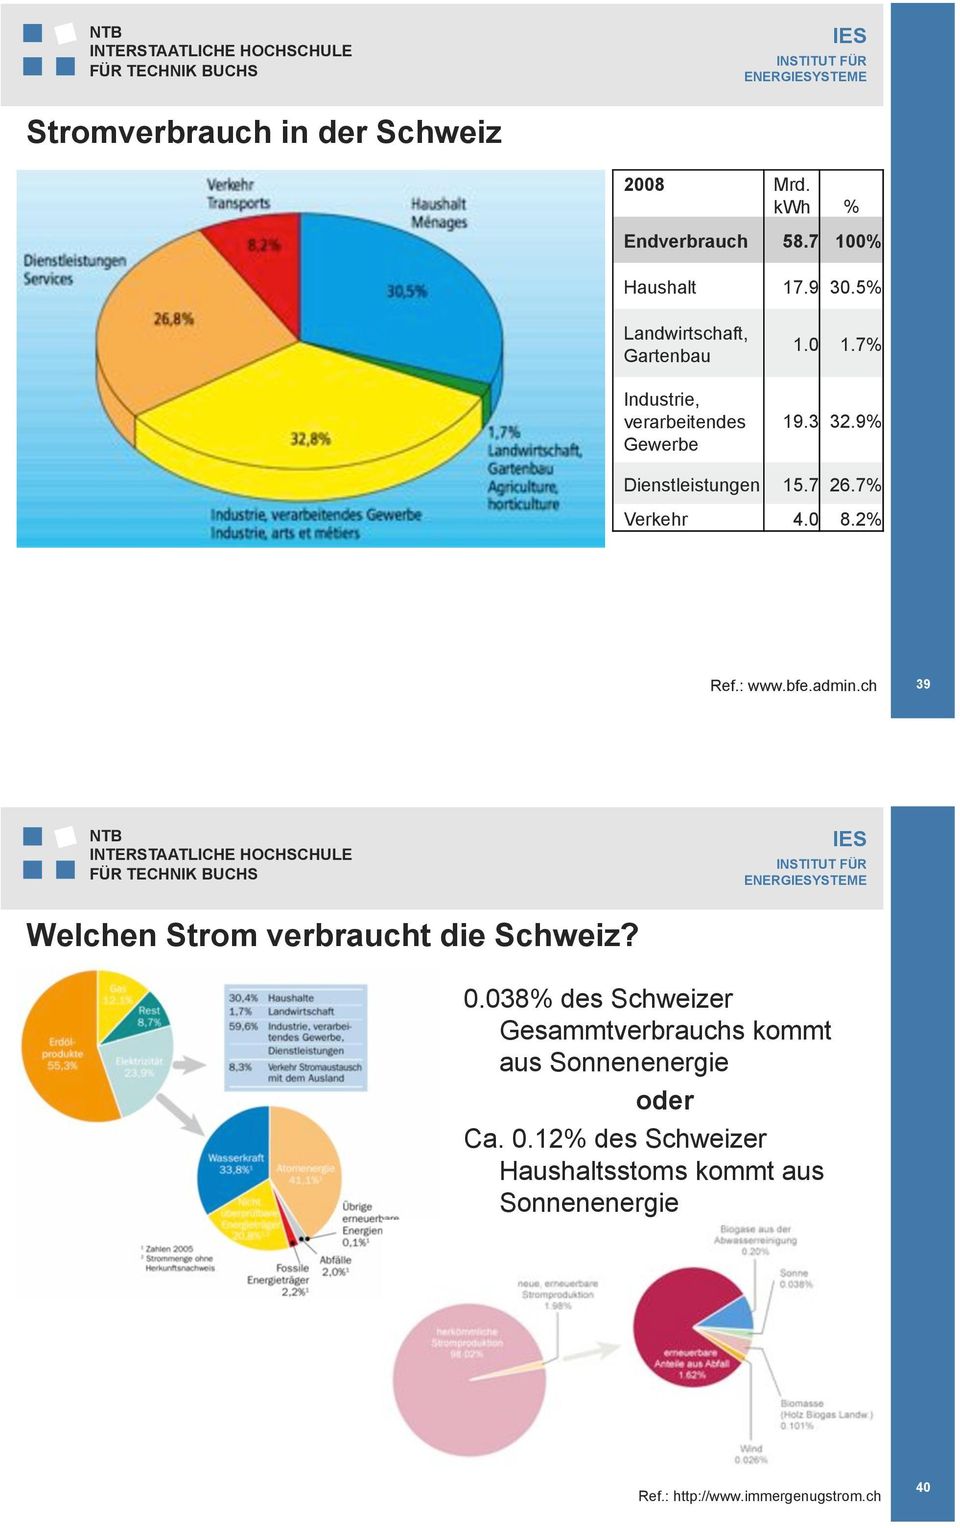 7% Verkehr 4.0 8.2% Ref.: www.bfe.admin.ch 39 ENERGYSTEME Welchen Strom verbraucht die Schweiz? 0.